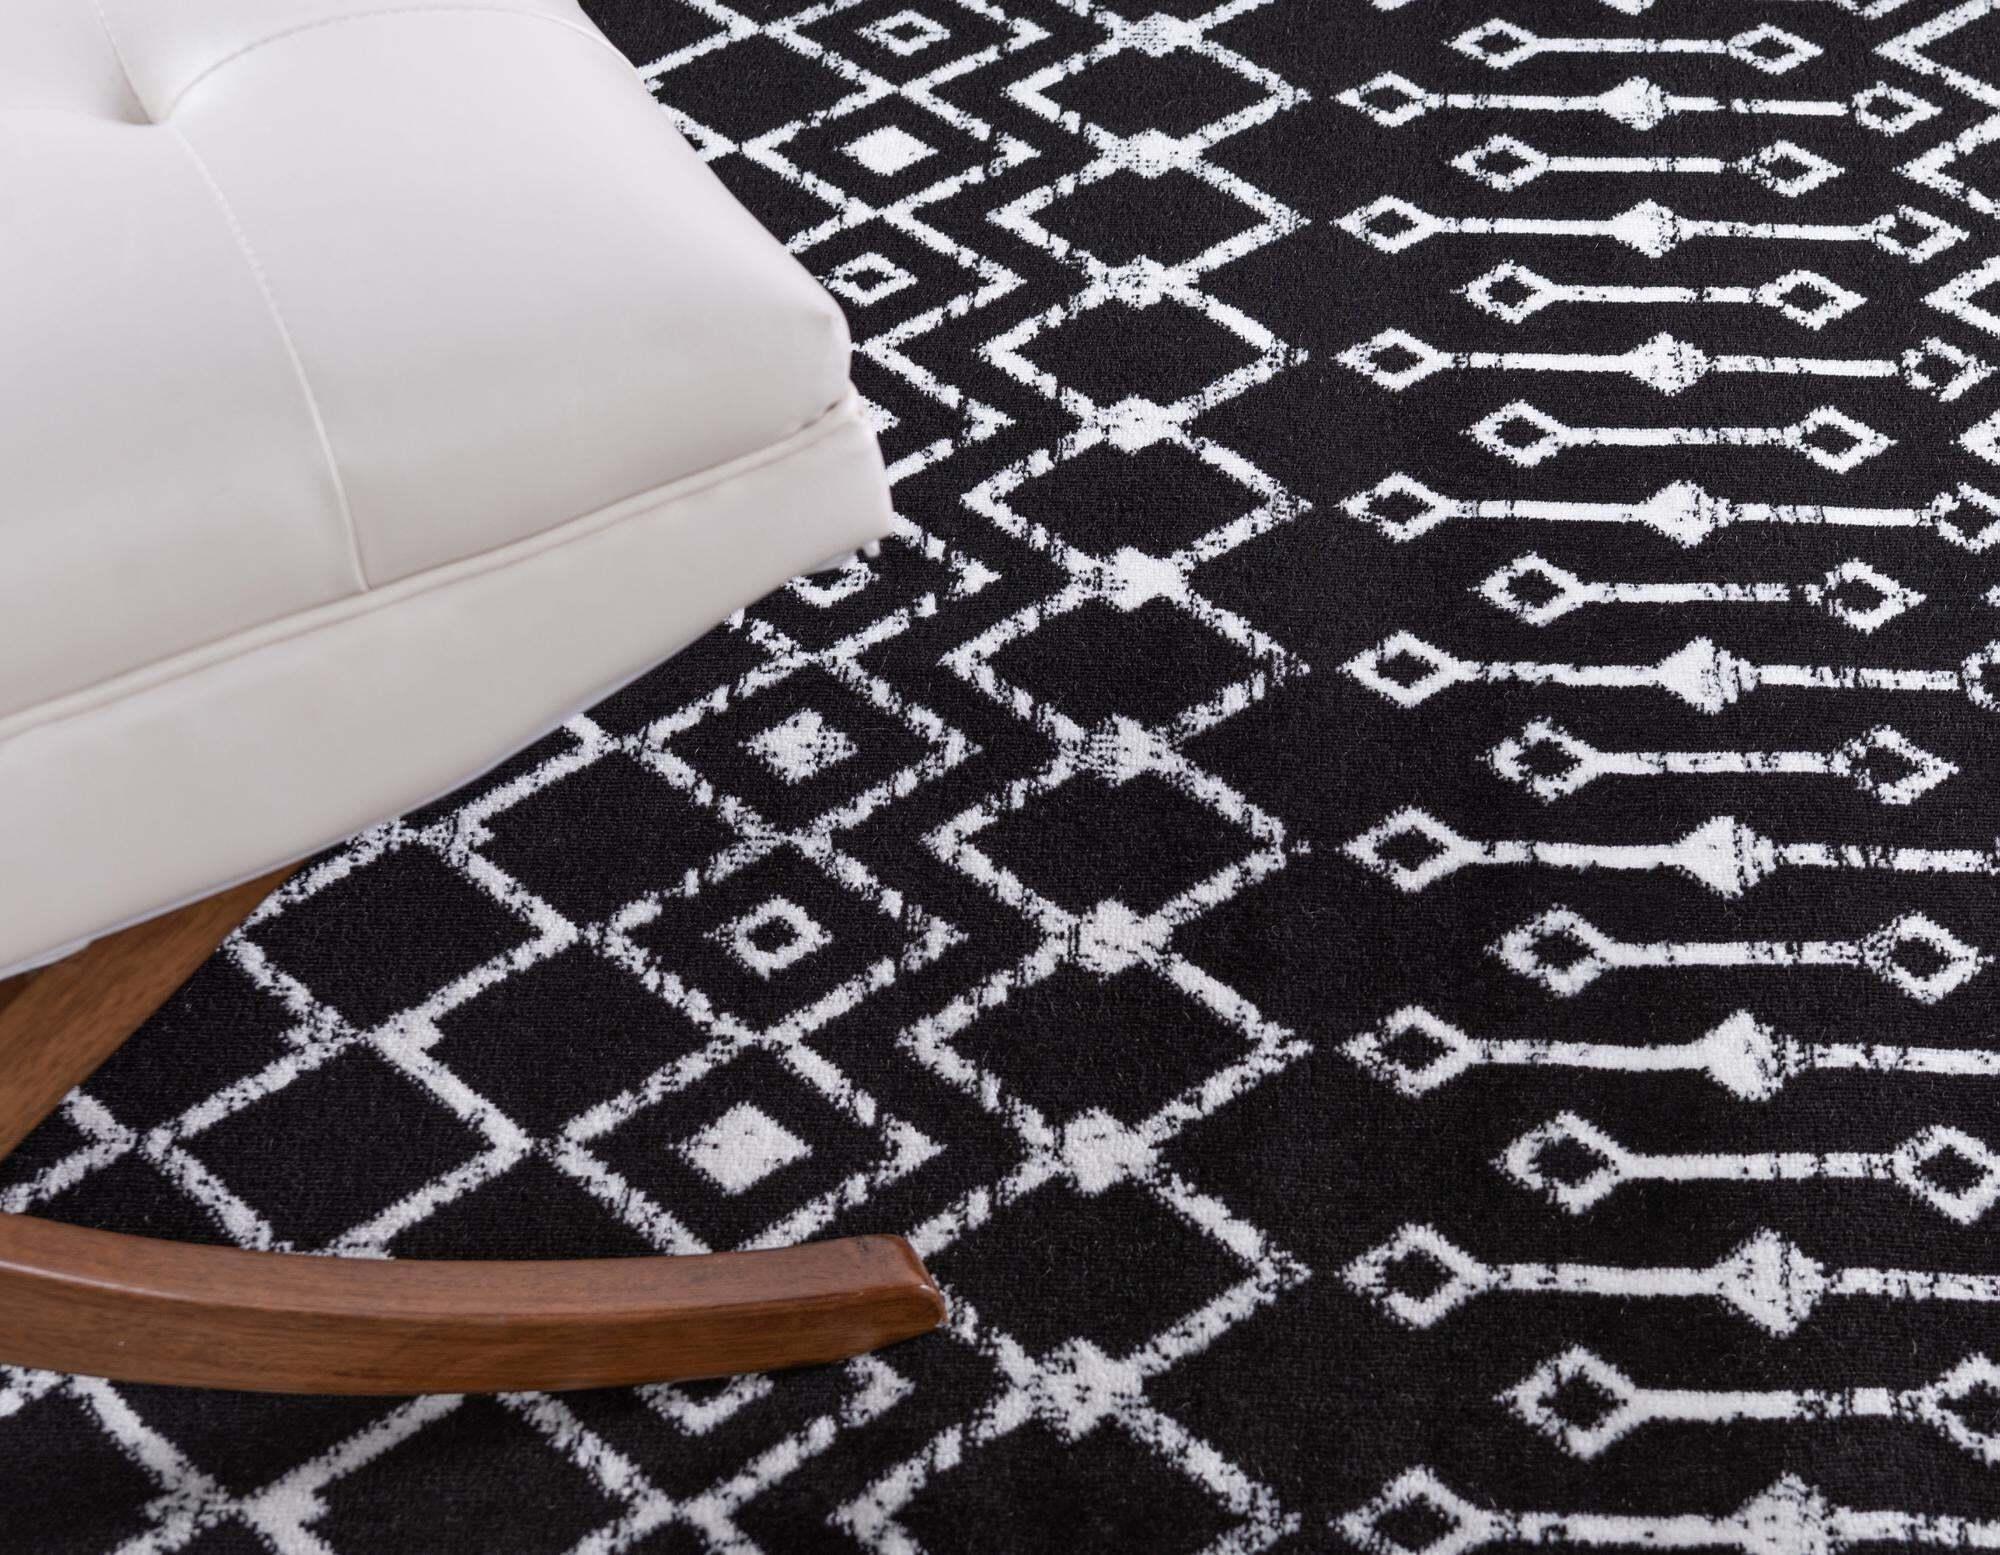 Unique Loom Indoor Rugs - Moroccan Trellis Geometric Rectangular 9x12 Rug Black & Ivory